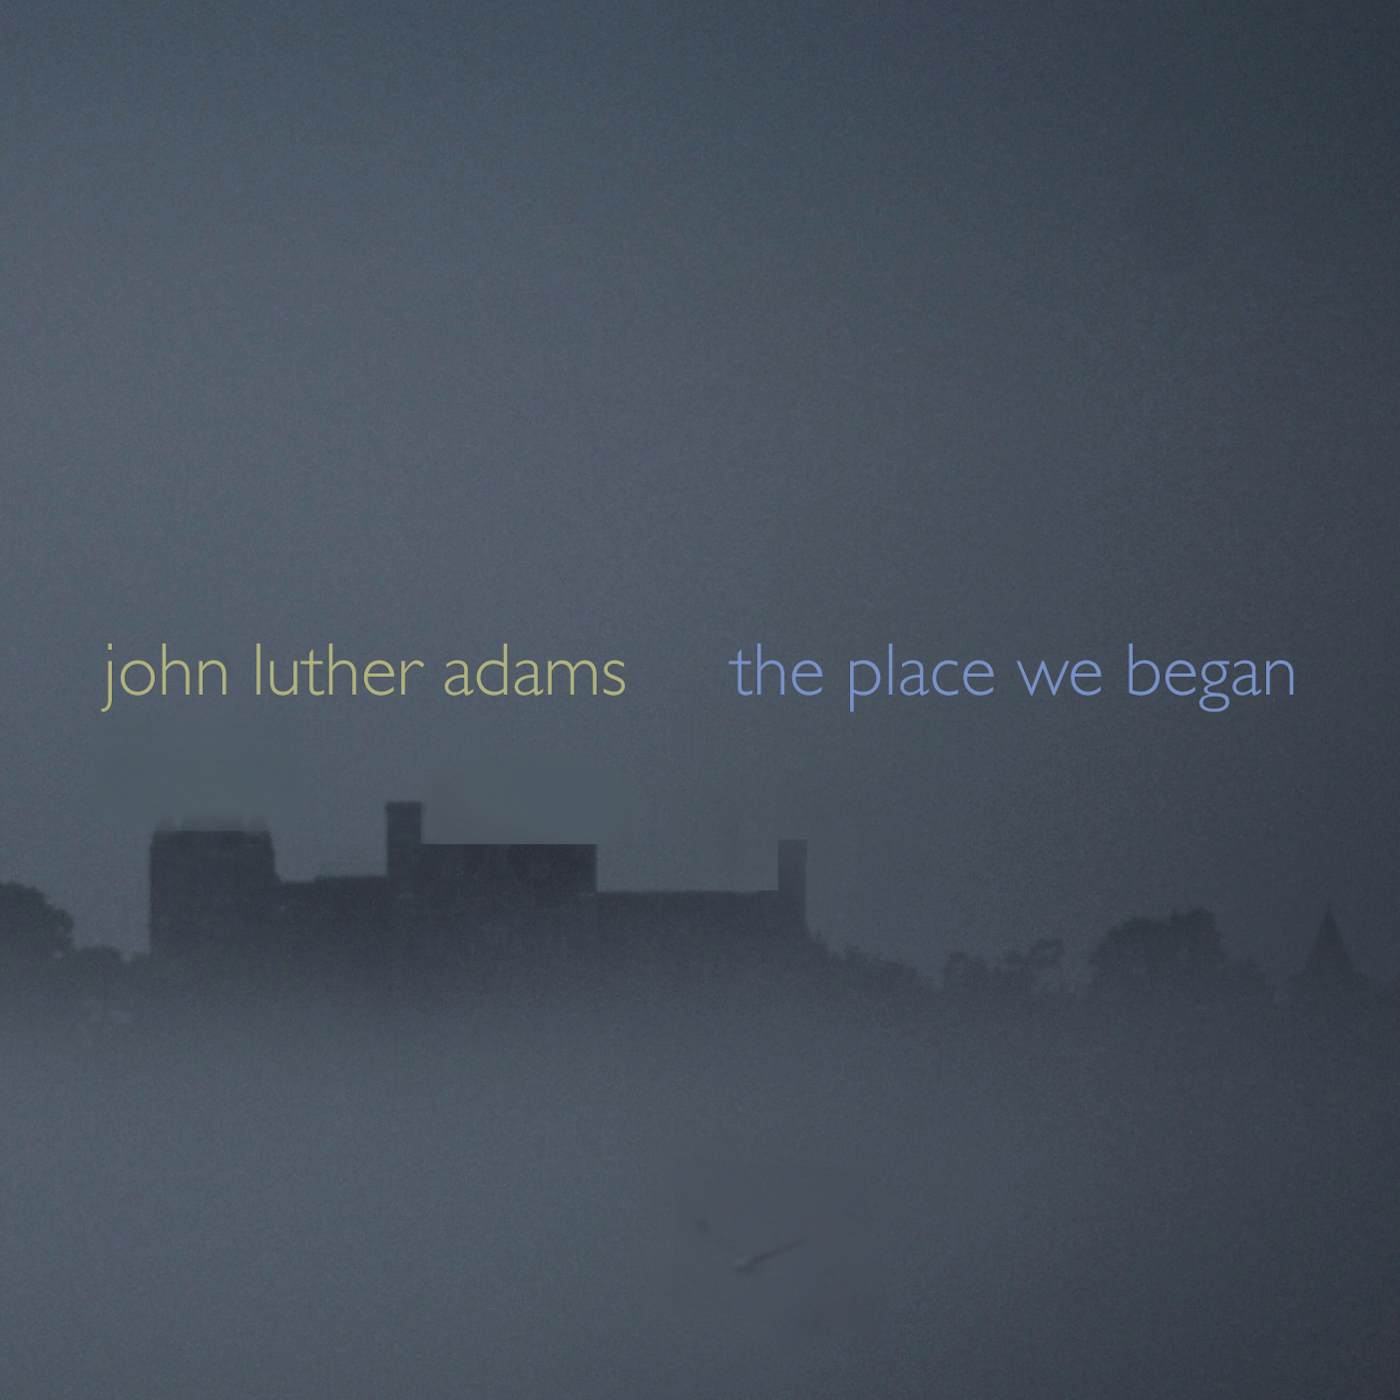 John Luther Adams PLACE WE BEGAN CD